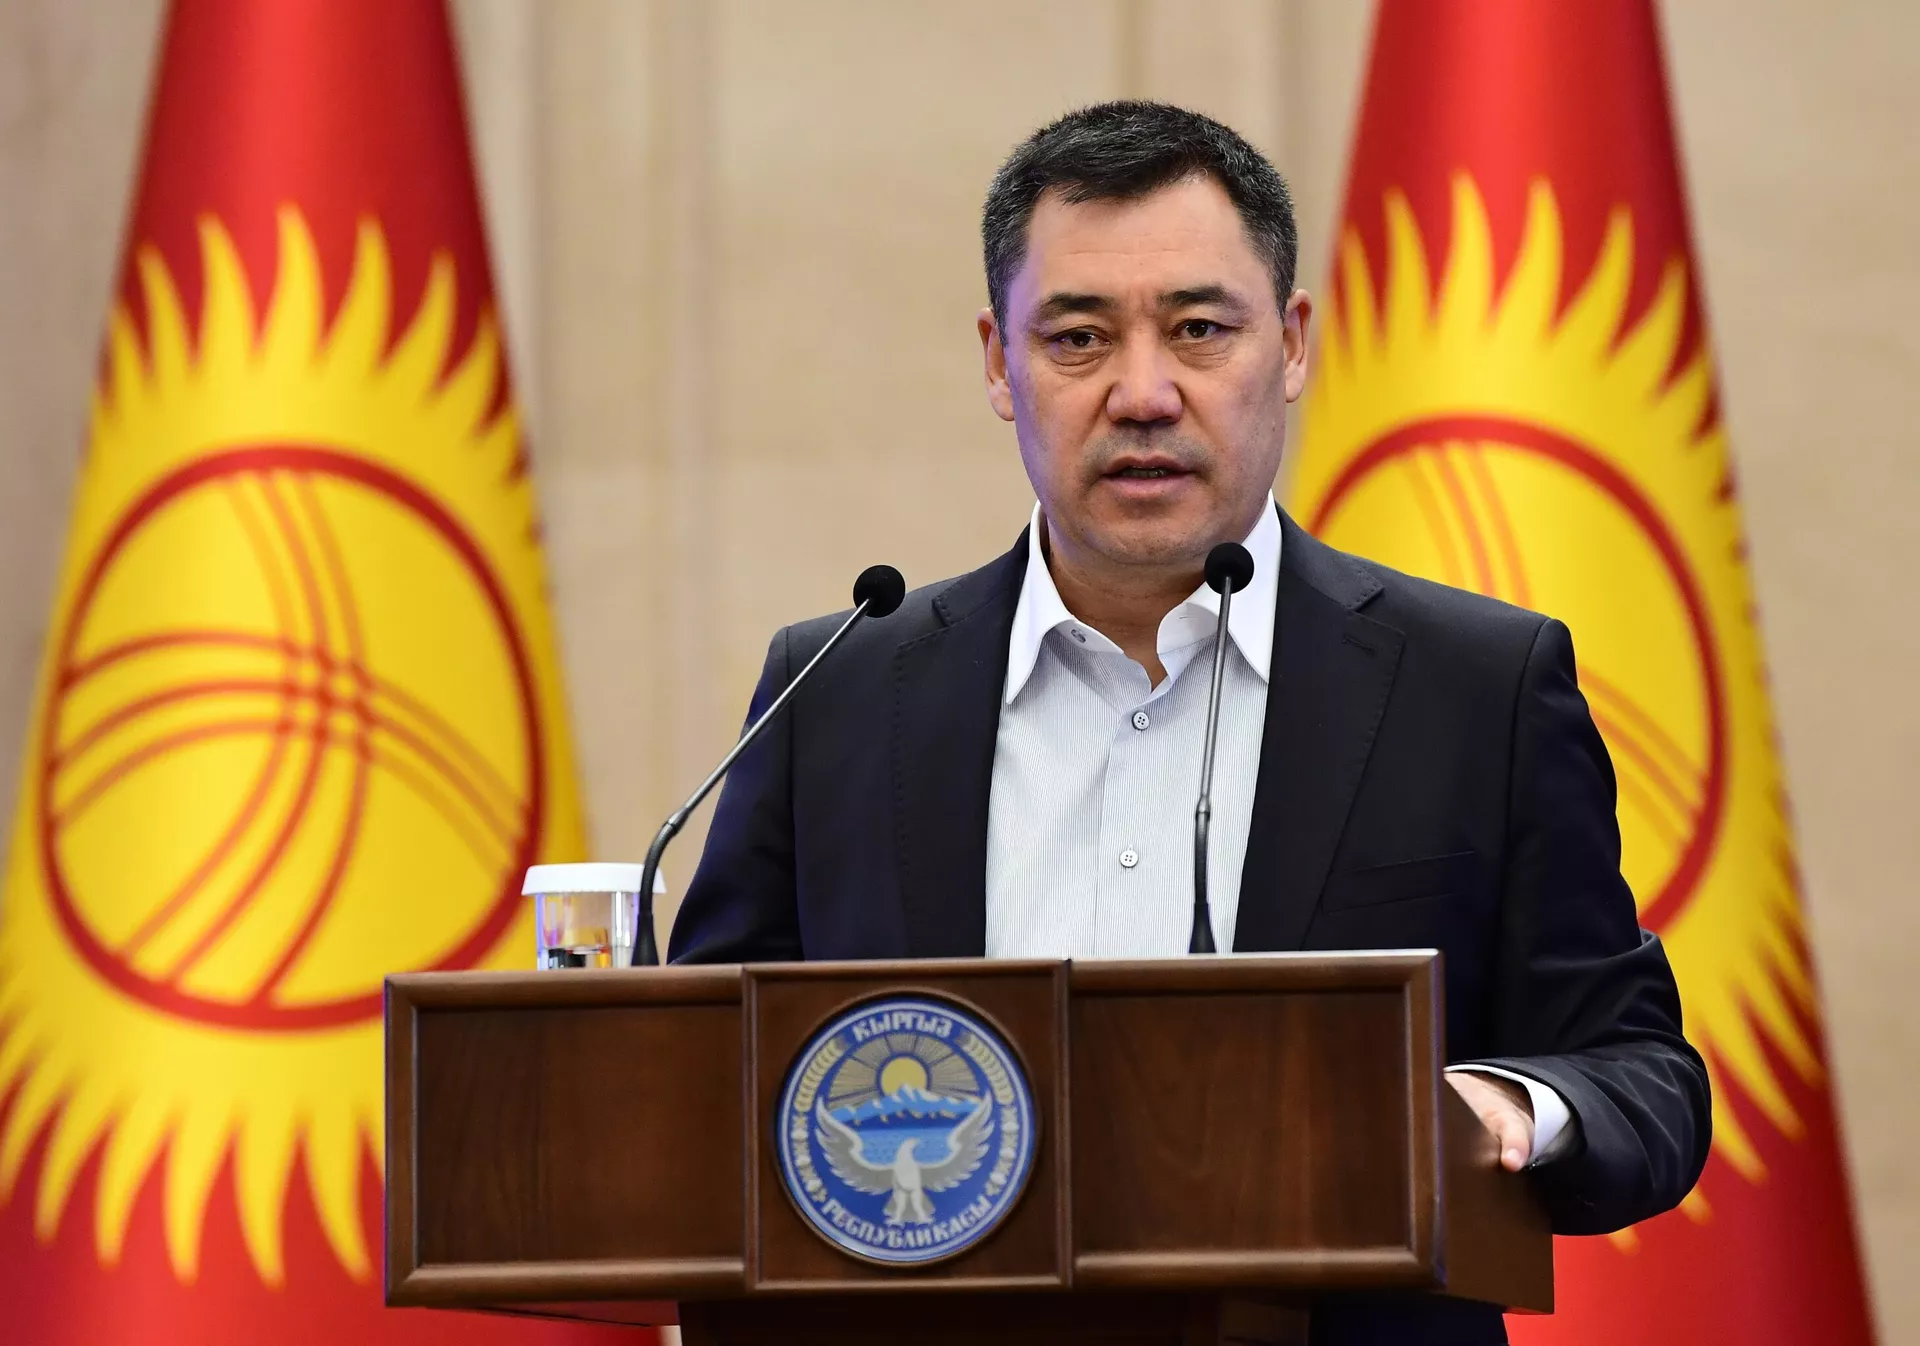 Премьер-министр Киргизии Садыр Жапаров выступает на внеочередном заседании парламента в Бишкеке